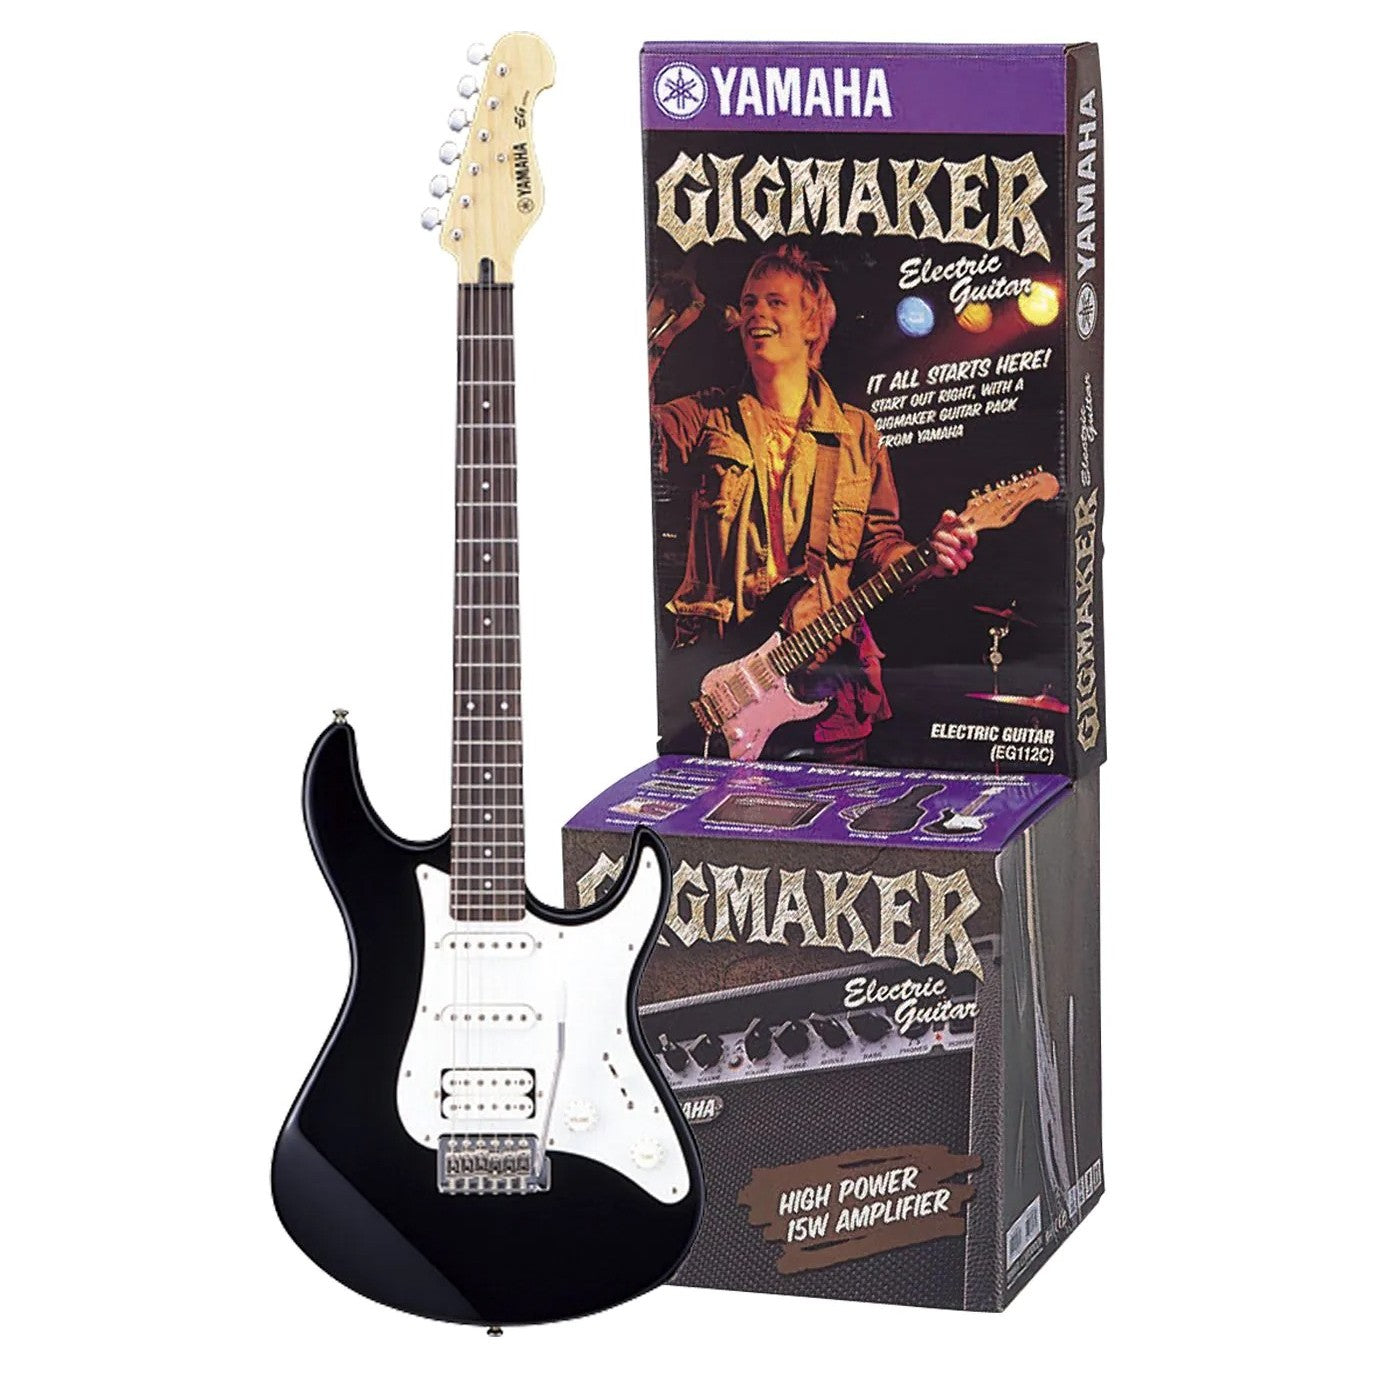 Guitar Yamaha Gigmaker Series